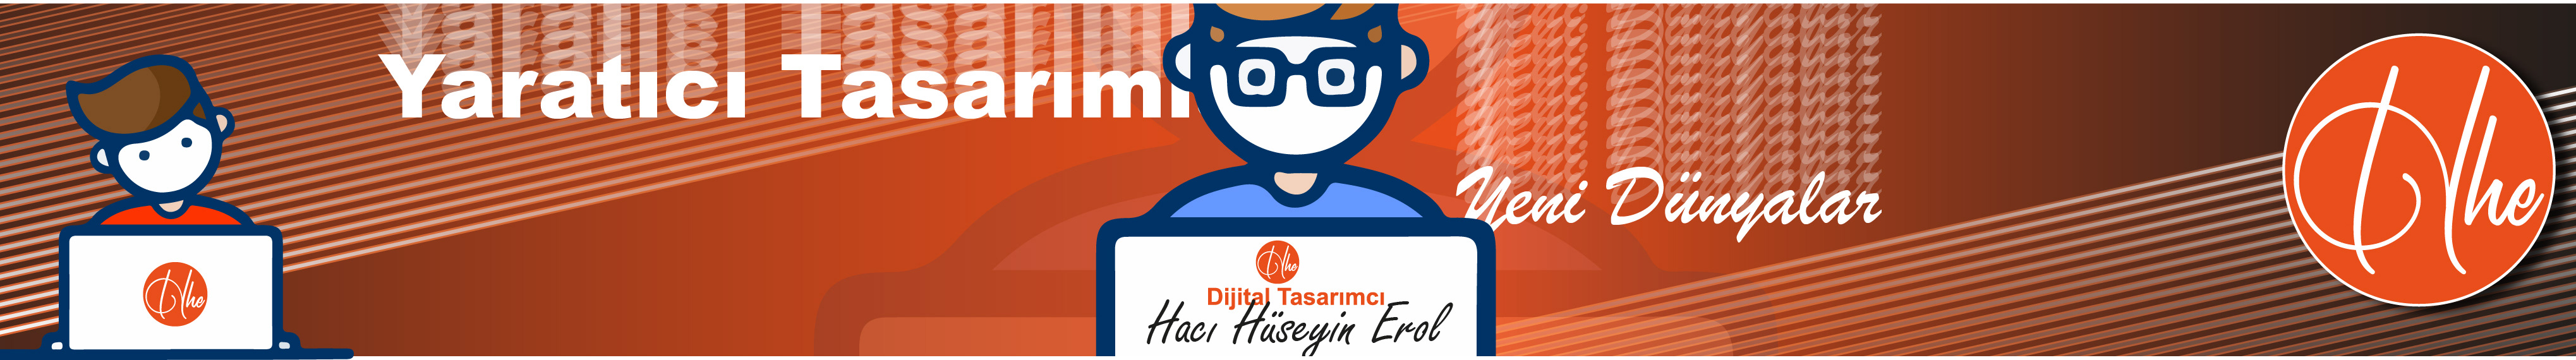 Hüseyin Erol's profile banner